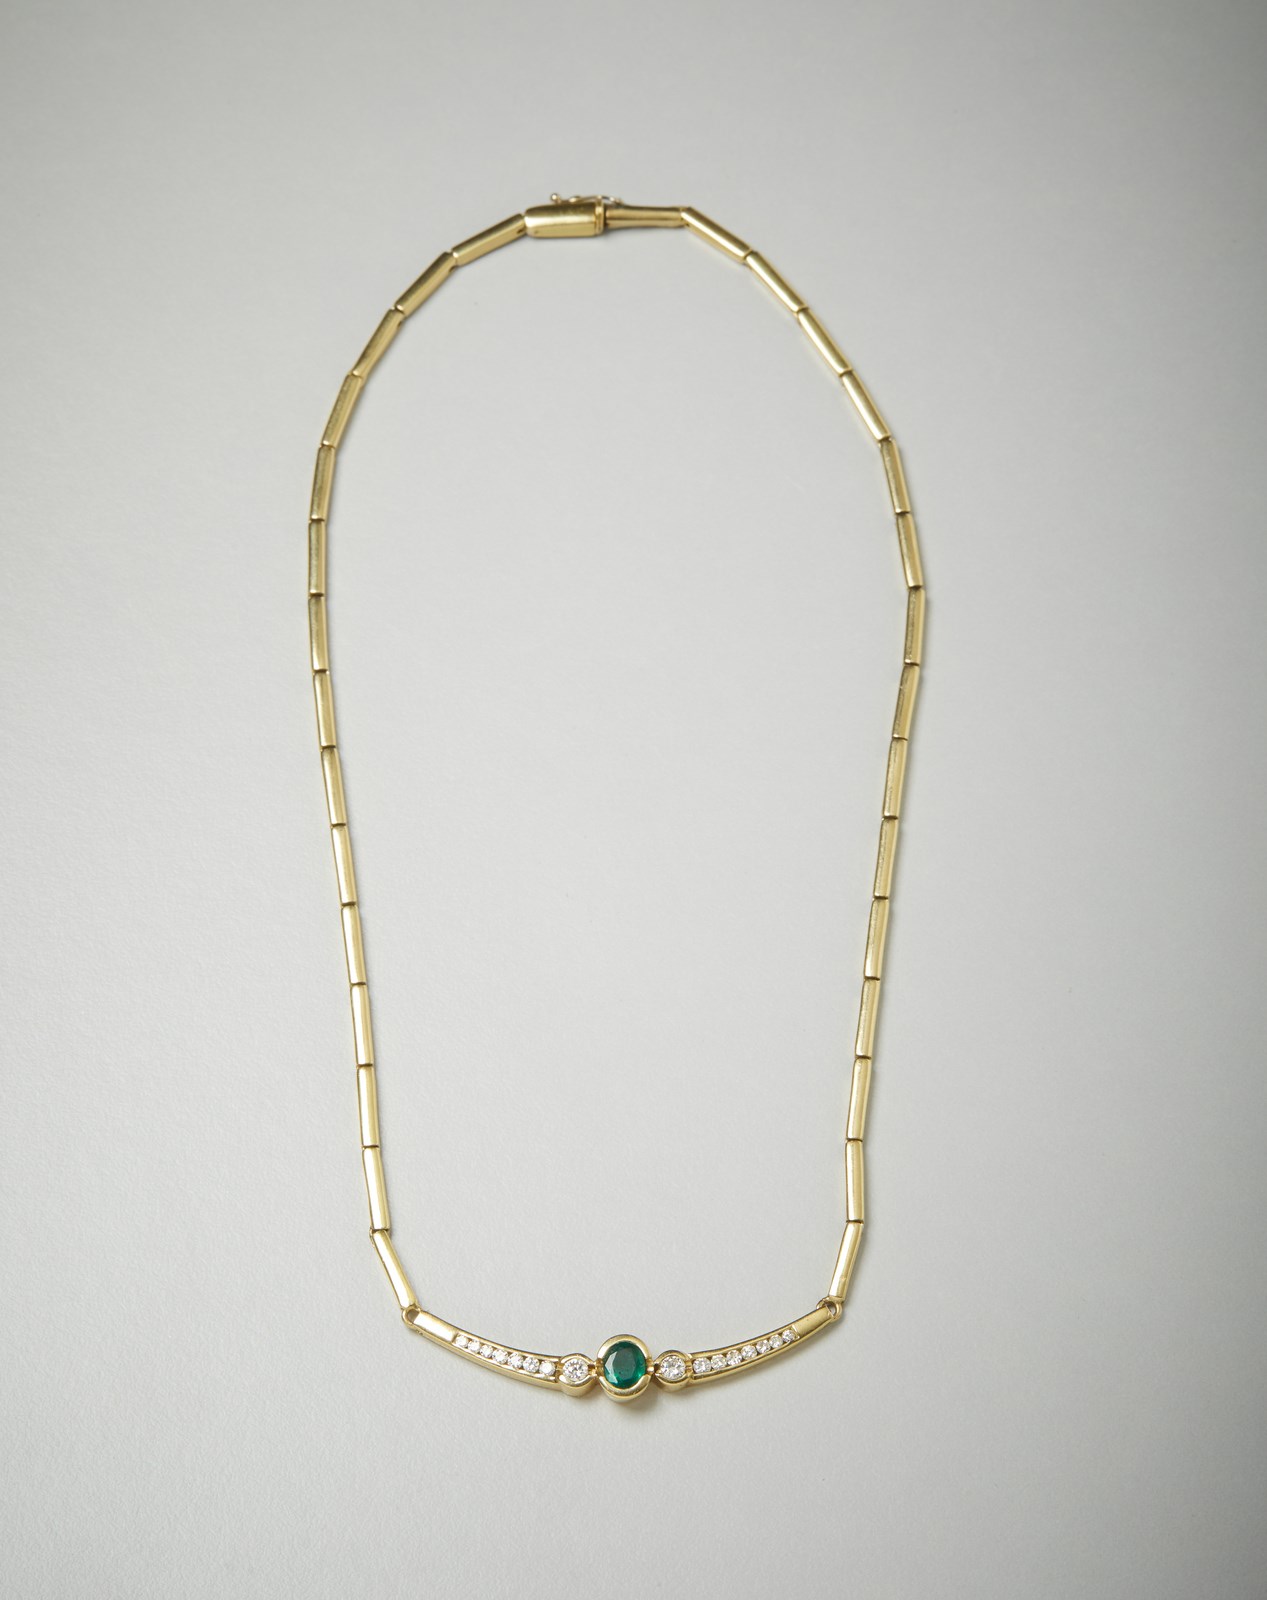 Collier a segmenti in oro giallo 750/1000  con smeraldo centrale e diamantini dégradés.  (. )